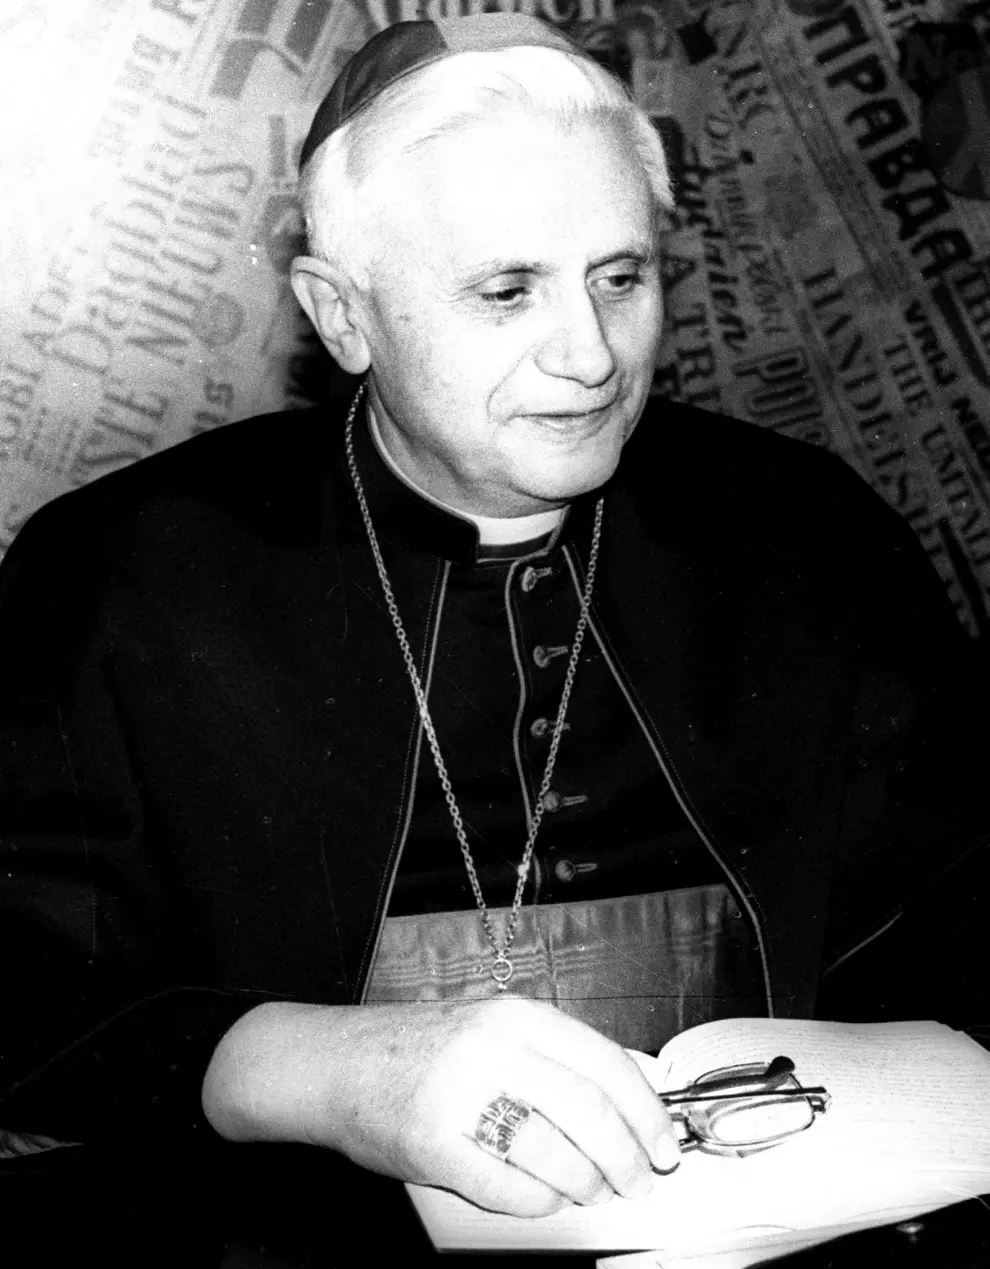 [[[HA ARCHIVO]]] Id: 2005-72524  Fecha: 19/04/2005 Propietario: EFE AGENCIA Autor: EFE AGENCIA descri: hm erv POPE29 MUNICH (ALEMANIA), 19.04.05.- Foto de archivo, tomada el 28 de febrero de 1982, del arzobispo de Munich Joseph Ratzinger, durante una misa en Munich. El cardenal Ratzinger fue elegido hoy martes 19 de abril nuevo Papa, con el nombre de Benedicto XVI. EFE/Ludwig Hamberger/Archivo